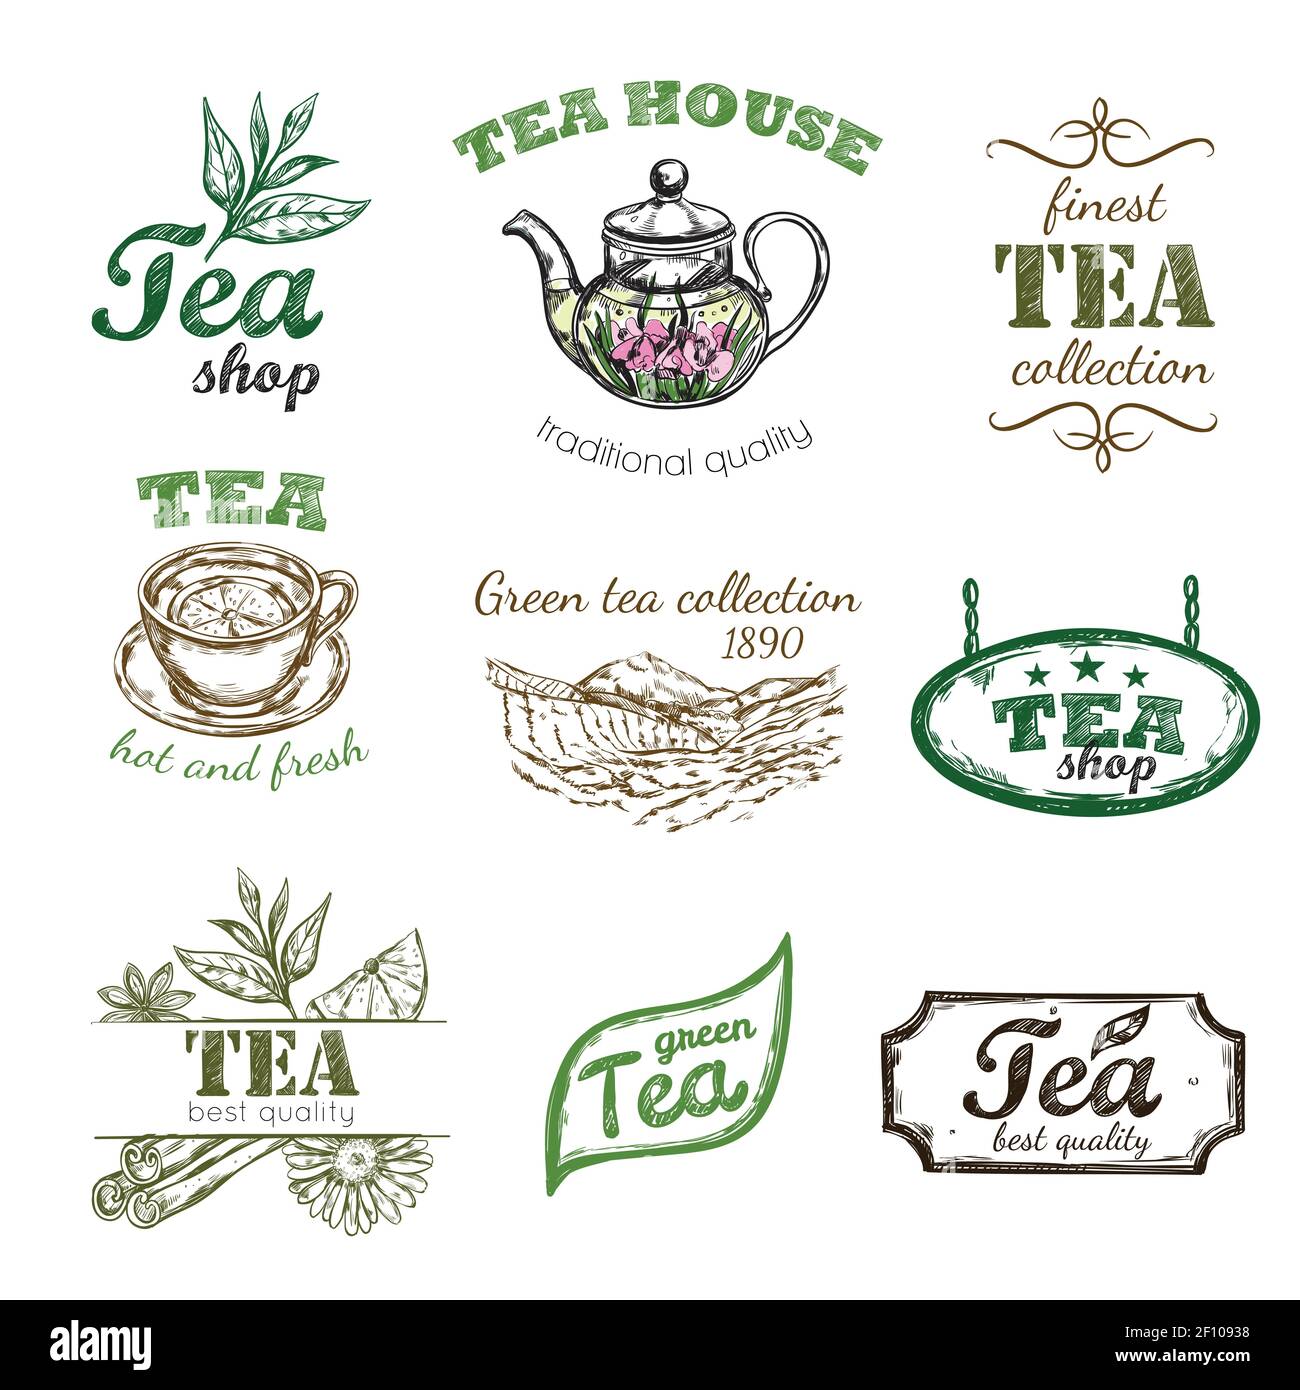 tea company logo